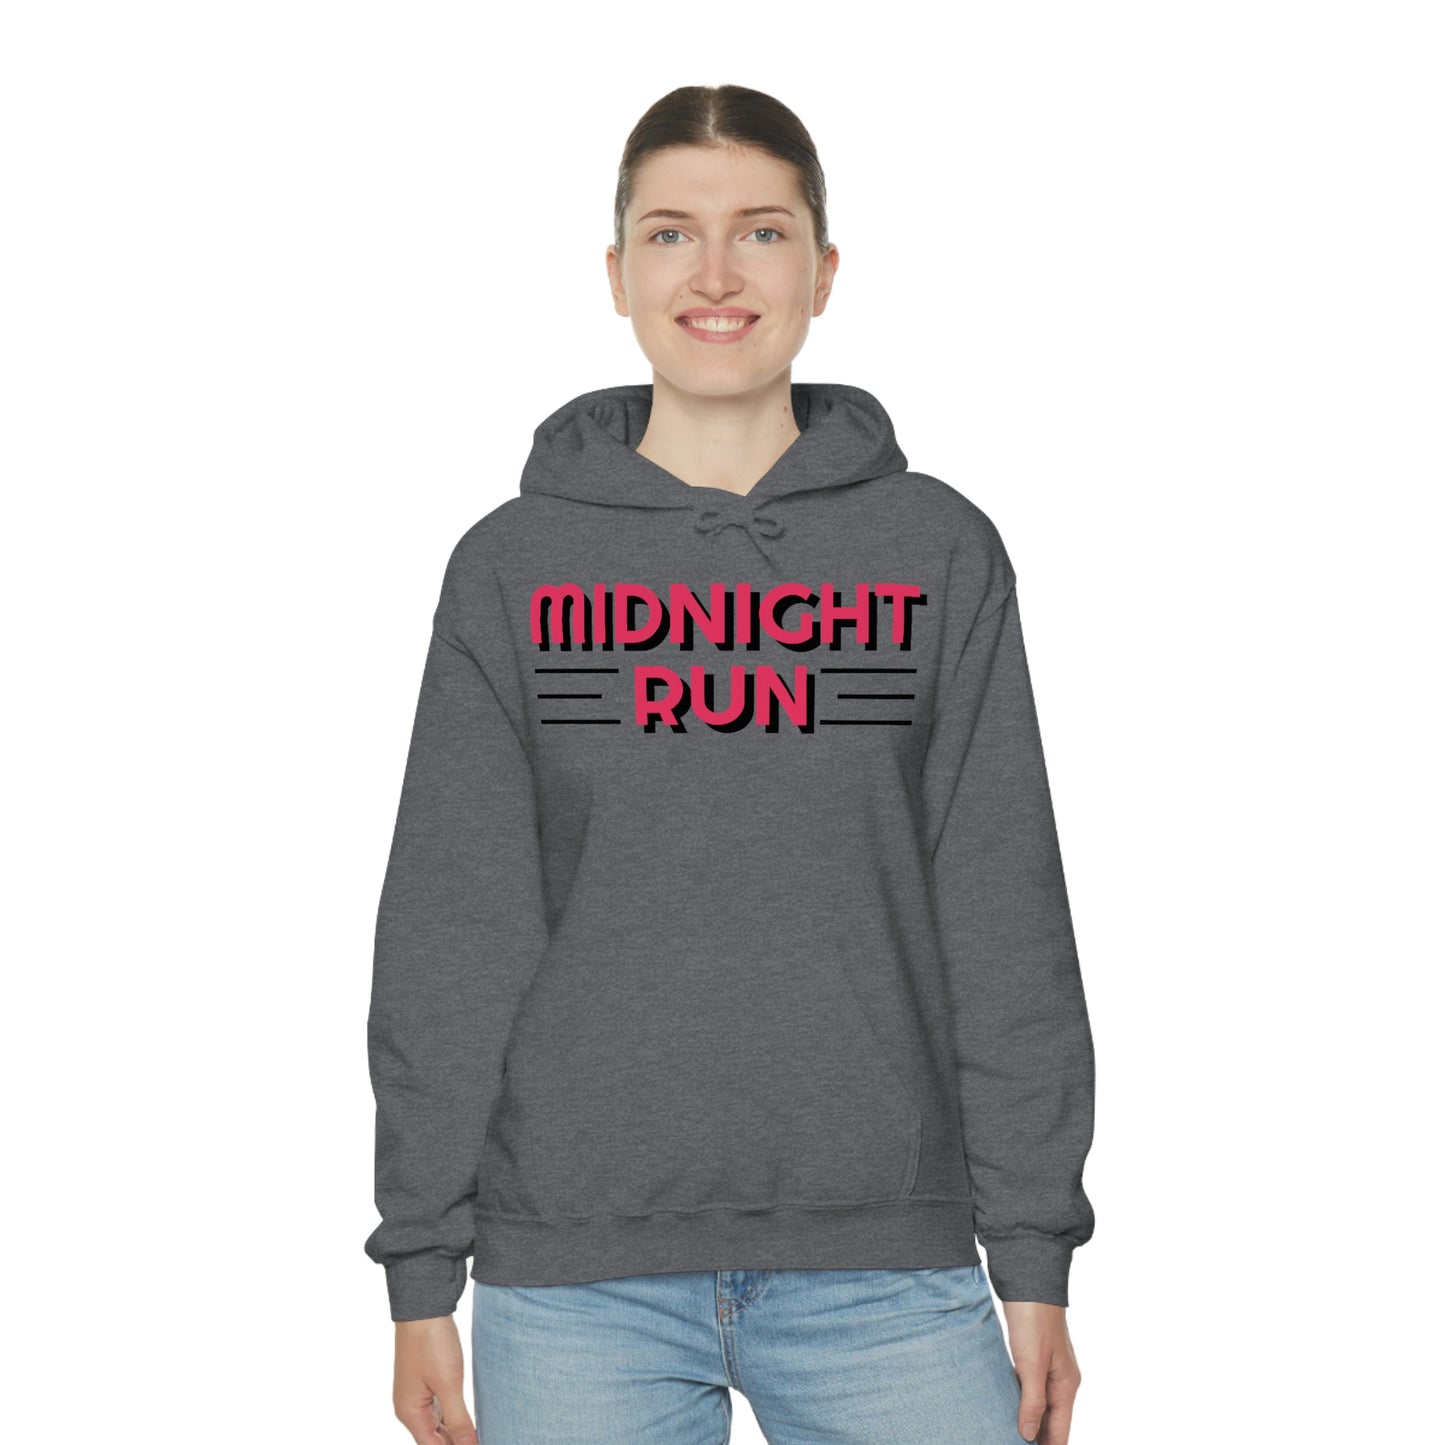 Midnight Run Retro Style Unisex Hooded Sweatshirt